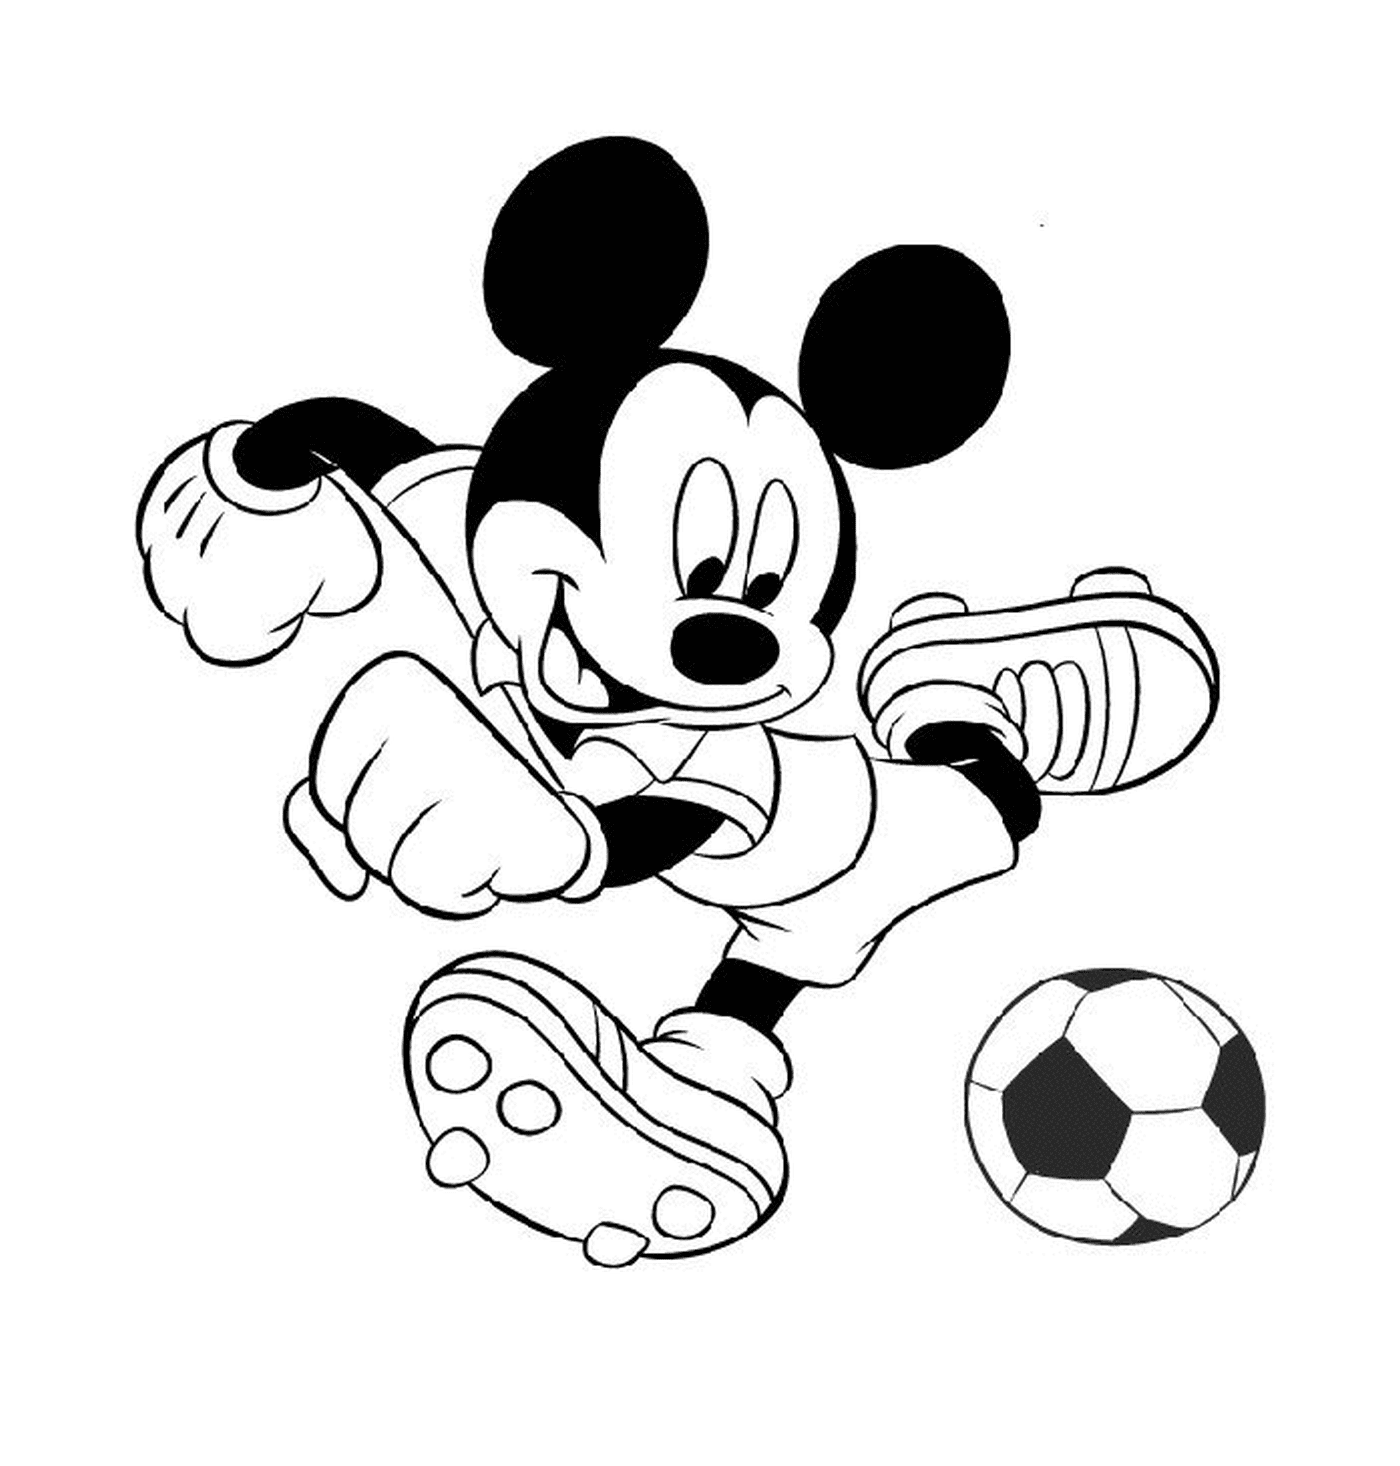   Mickey joue au foot : donnant un coup de pied à un ballon de soccer 